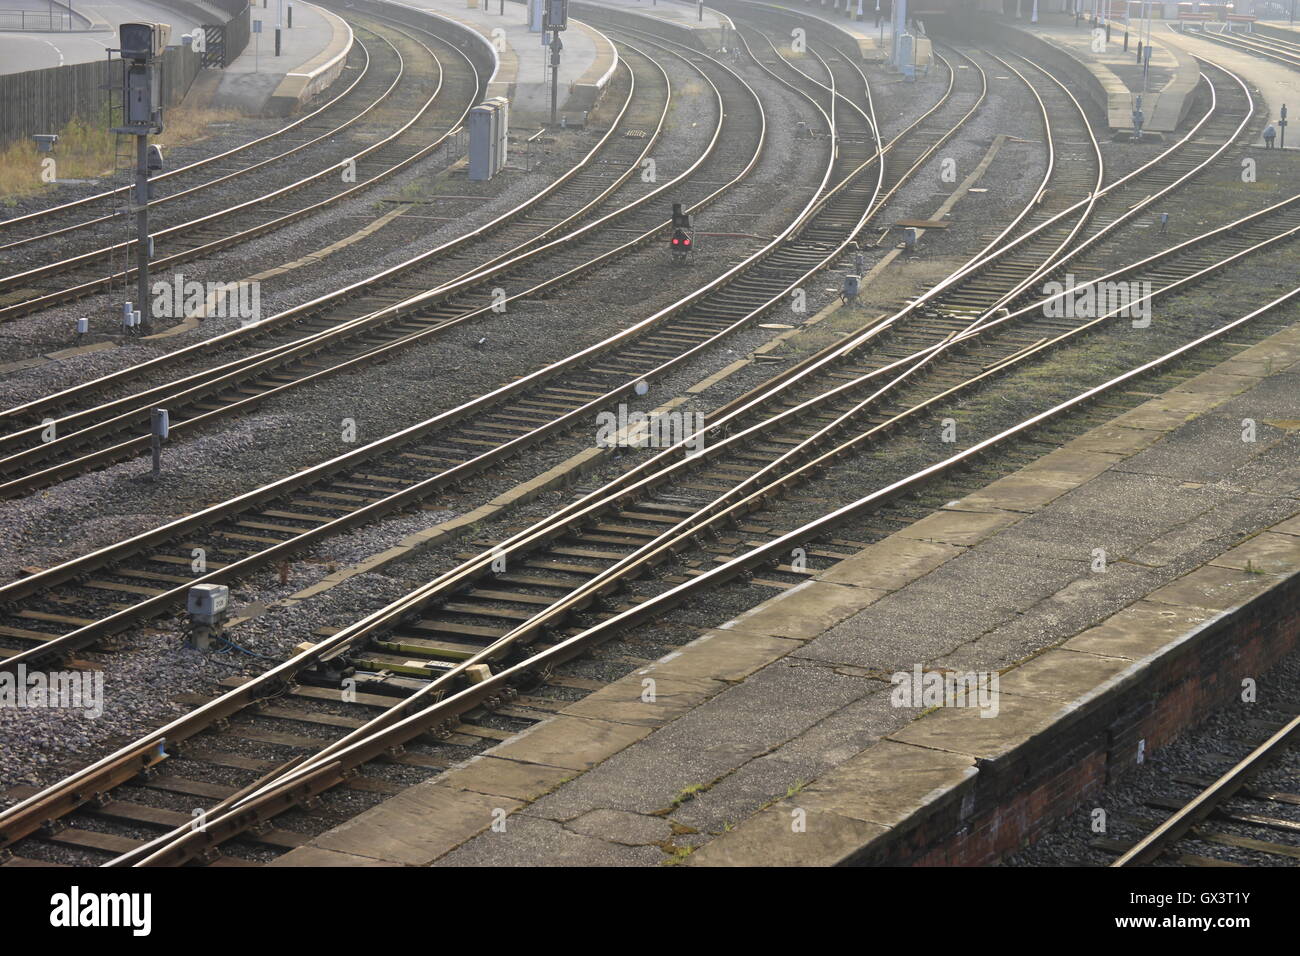 Morgensonne funkeln auf Schienen Linien Plattformen Rumpf Bahnhof england Stockfoto